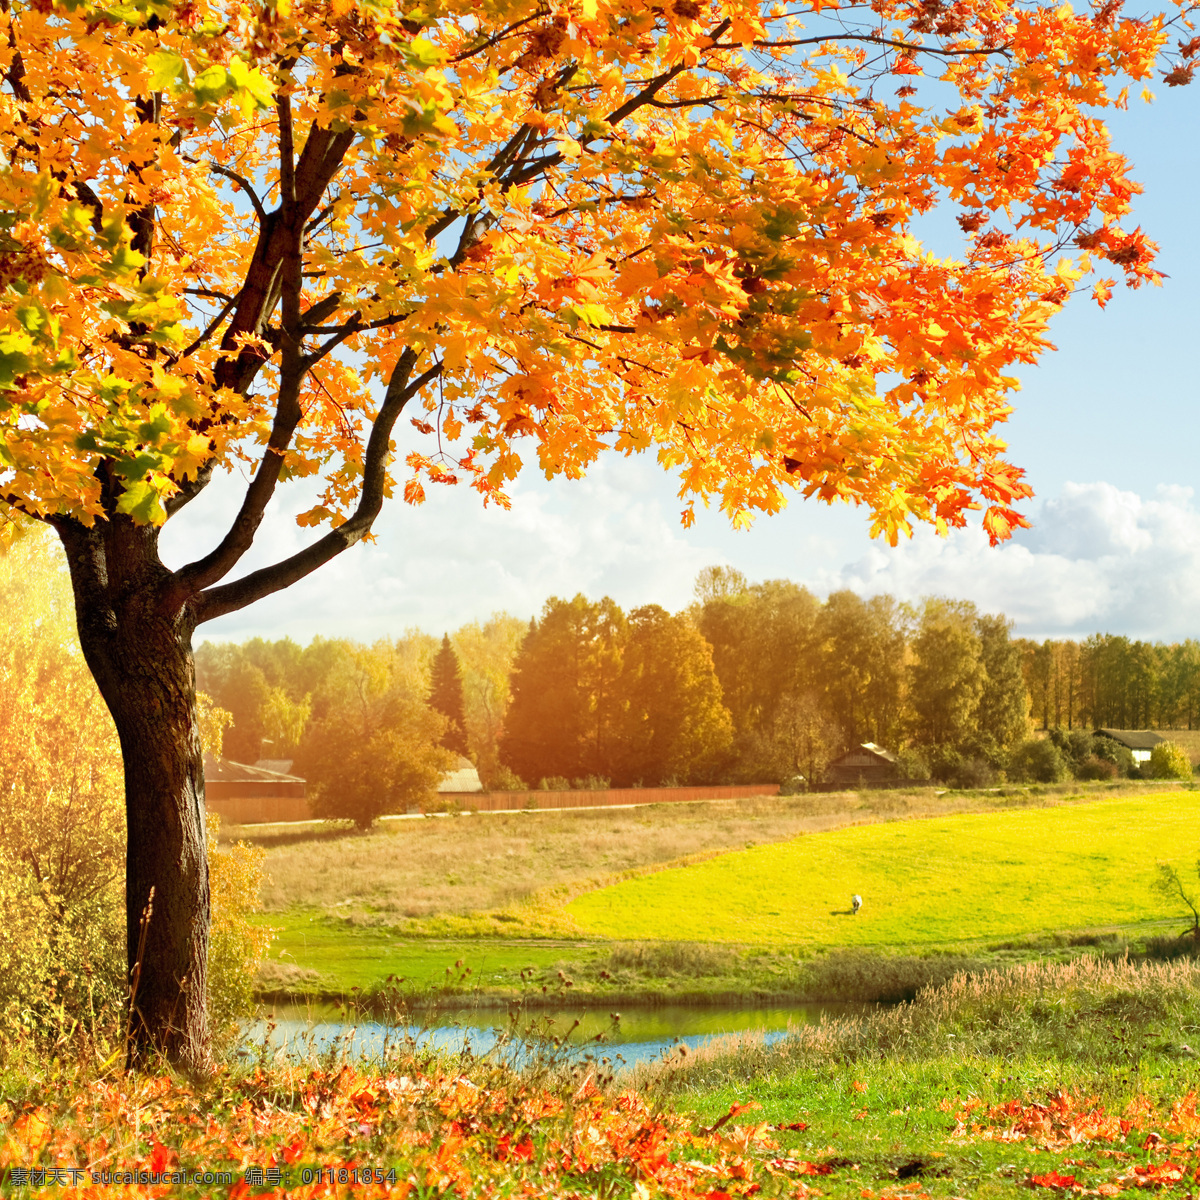 美丽秋天树木 美丽秋天风景 秋季风景 秋天美景 秋天枫叶 黄叶 落叶 枫树 自然风景 自然景观 黄色